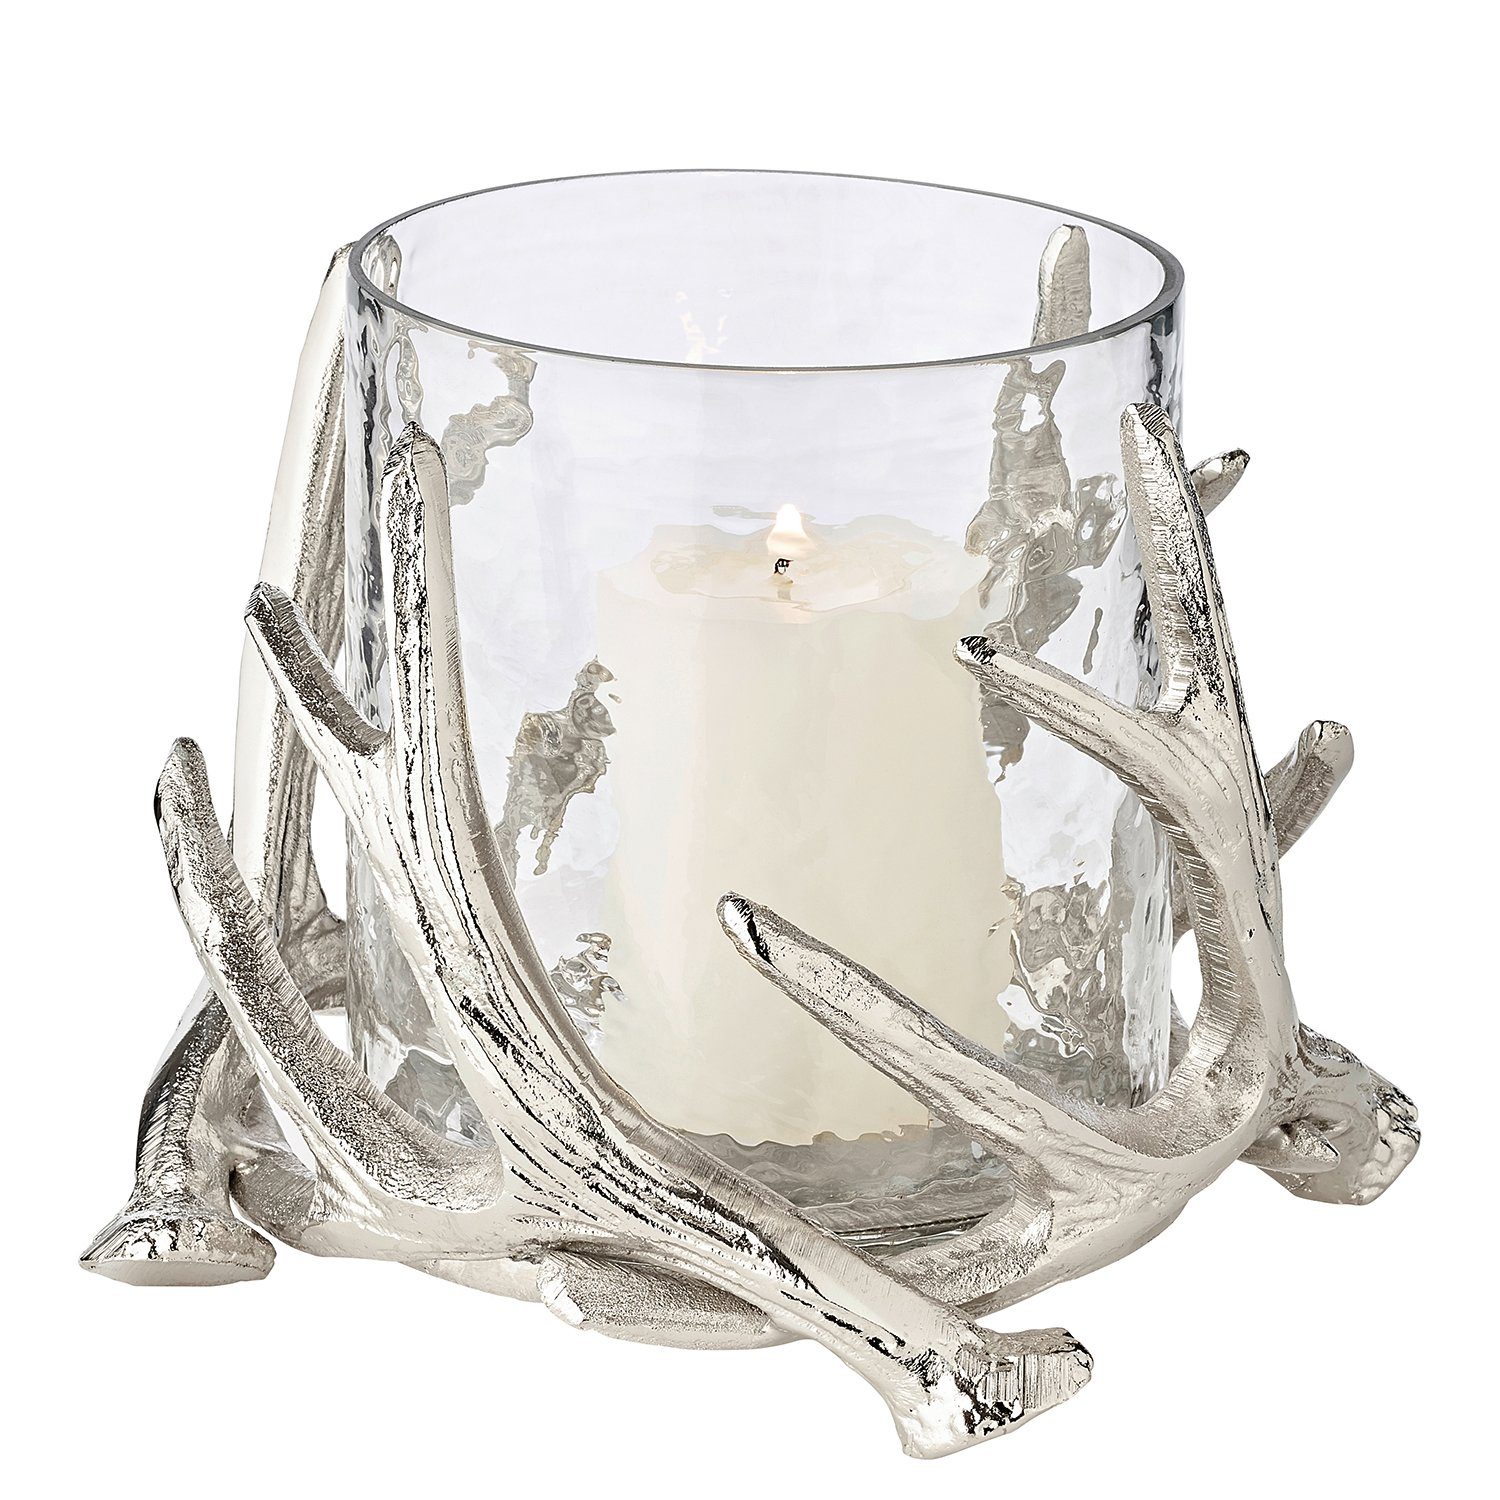 EDZARD Windlicht Kingston, Kerzenhalter im Geweih-Design für Stumpenkerzen, Kerzenleuchter mit Silber-Optik, Höhe 15 cm, Ø 17